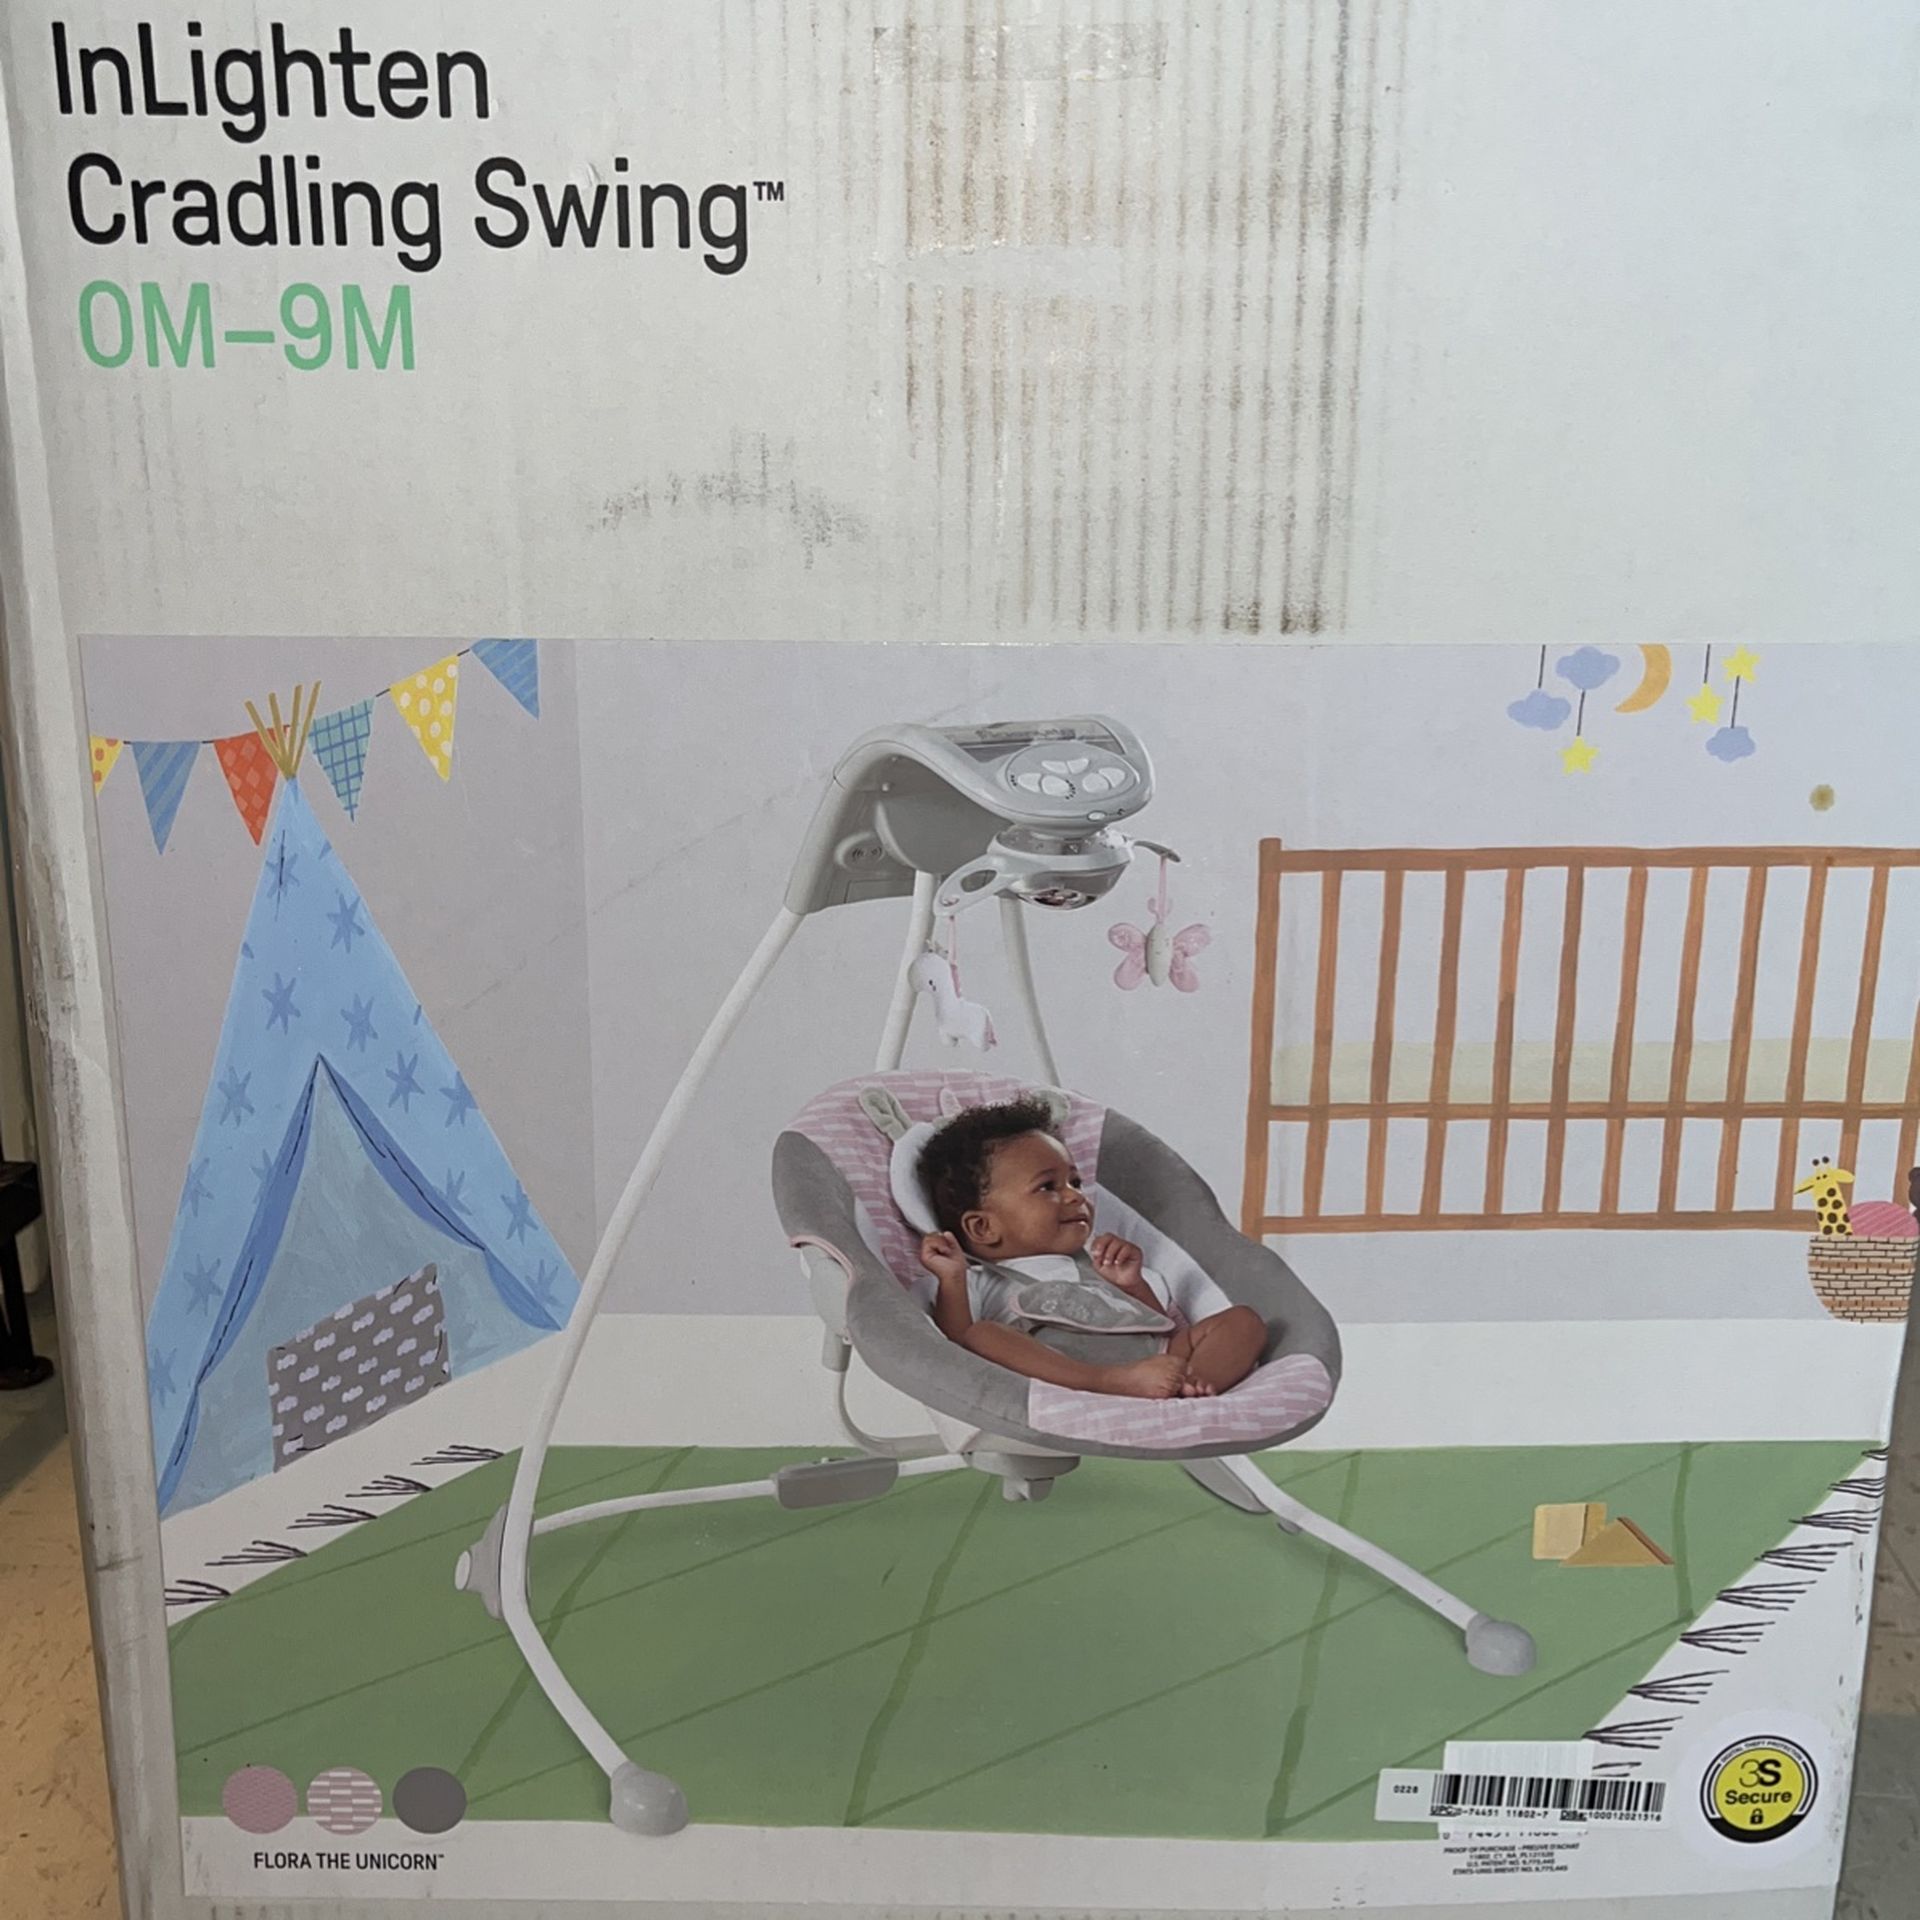 InLighten Baby Swing